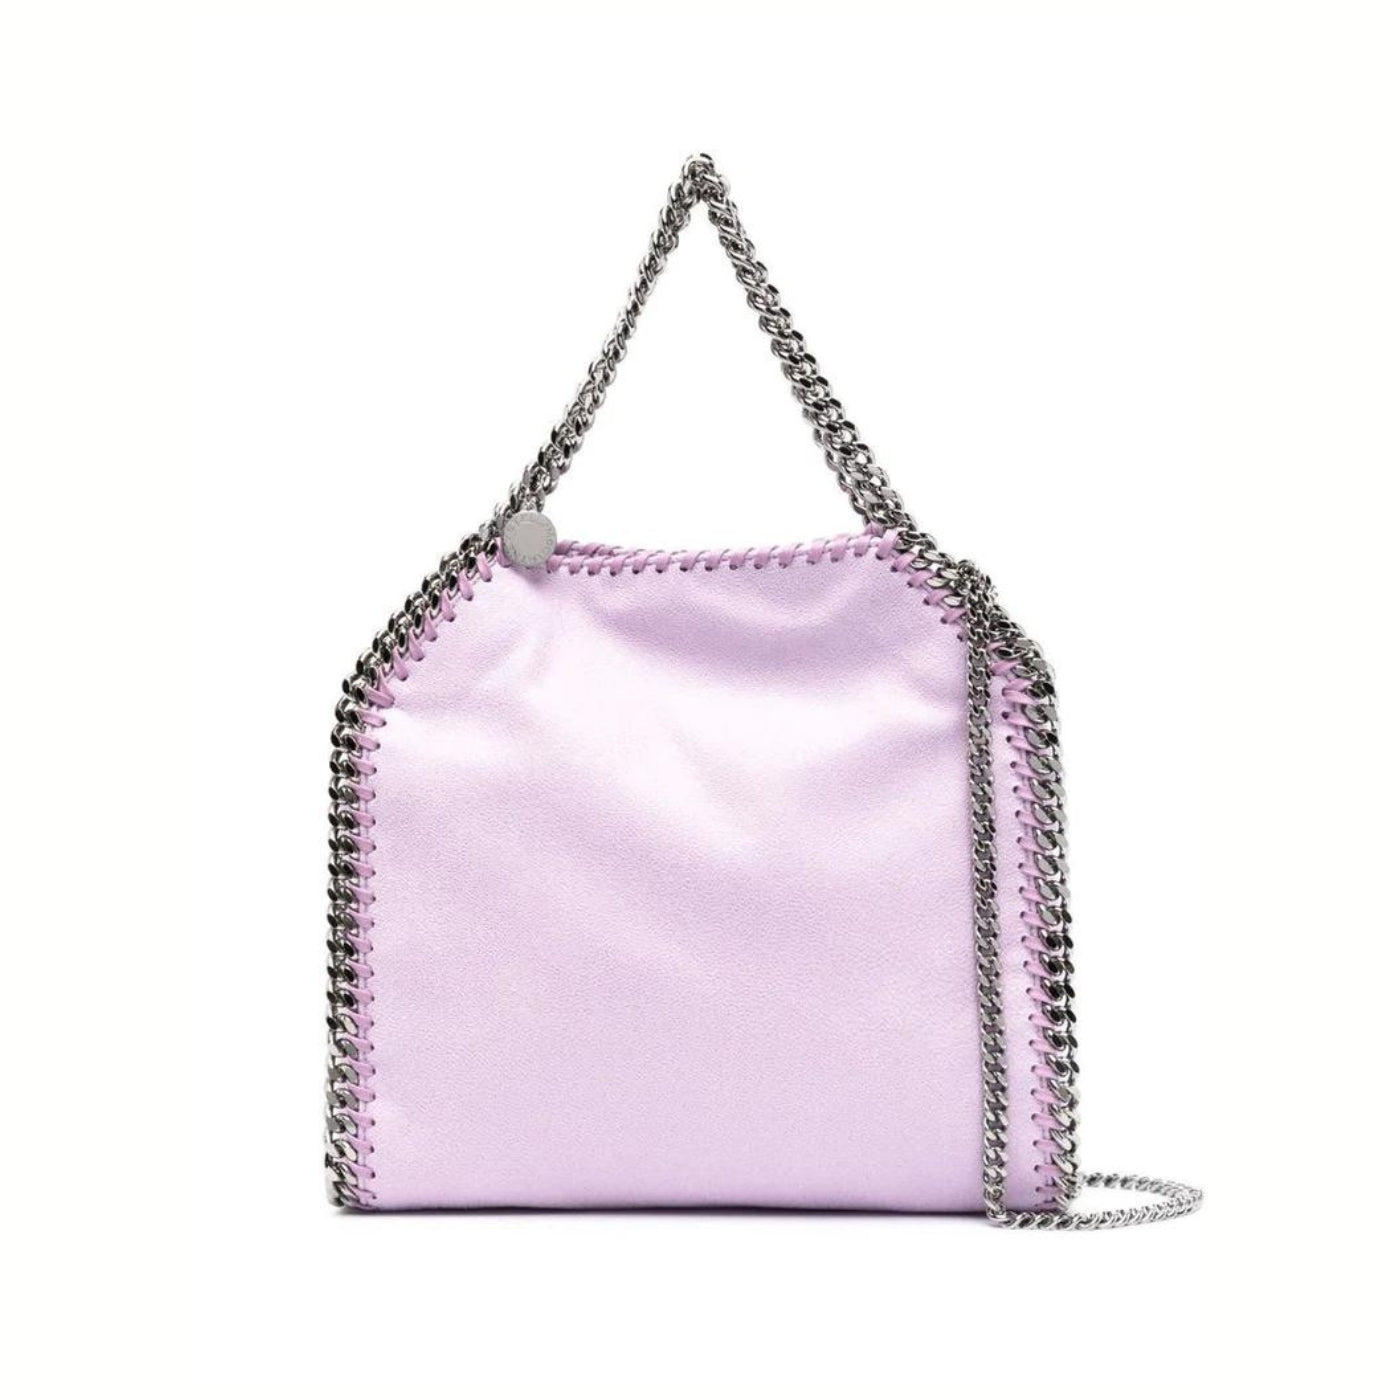 Falabella Mini Tote Bag in Lilac Handbags STELLA MCCARTNEY - LOLAMIR